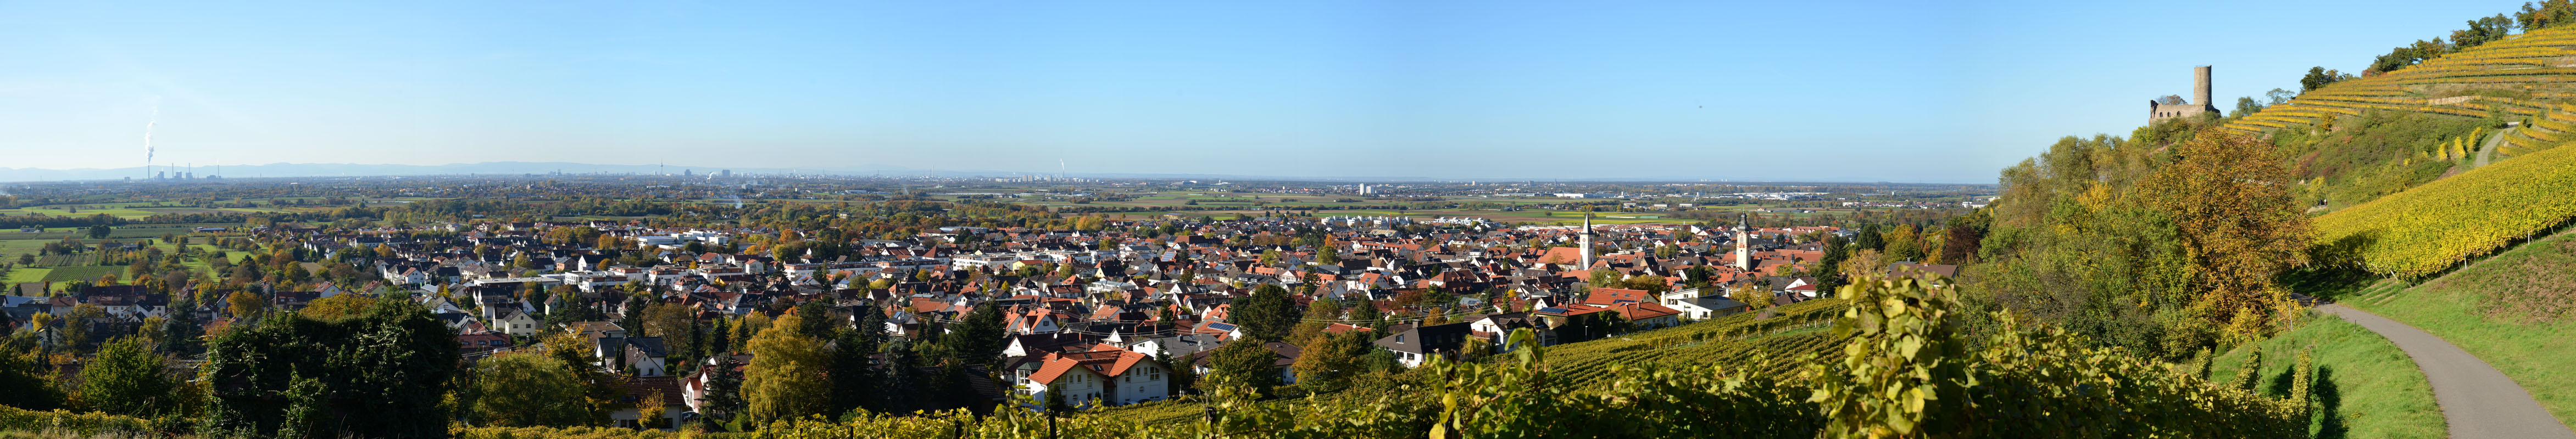 panorama_schriesheim_800.jpg